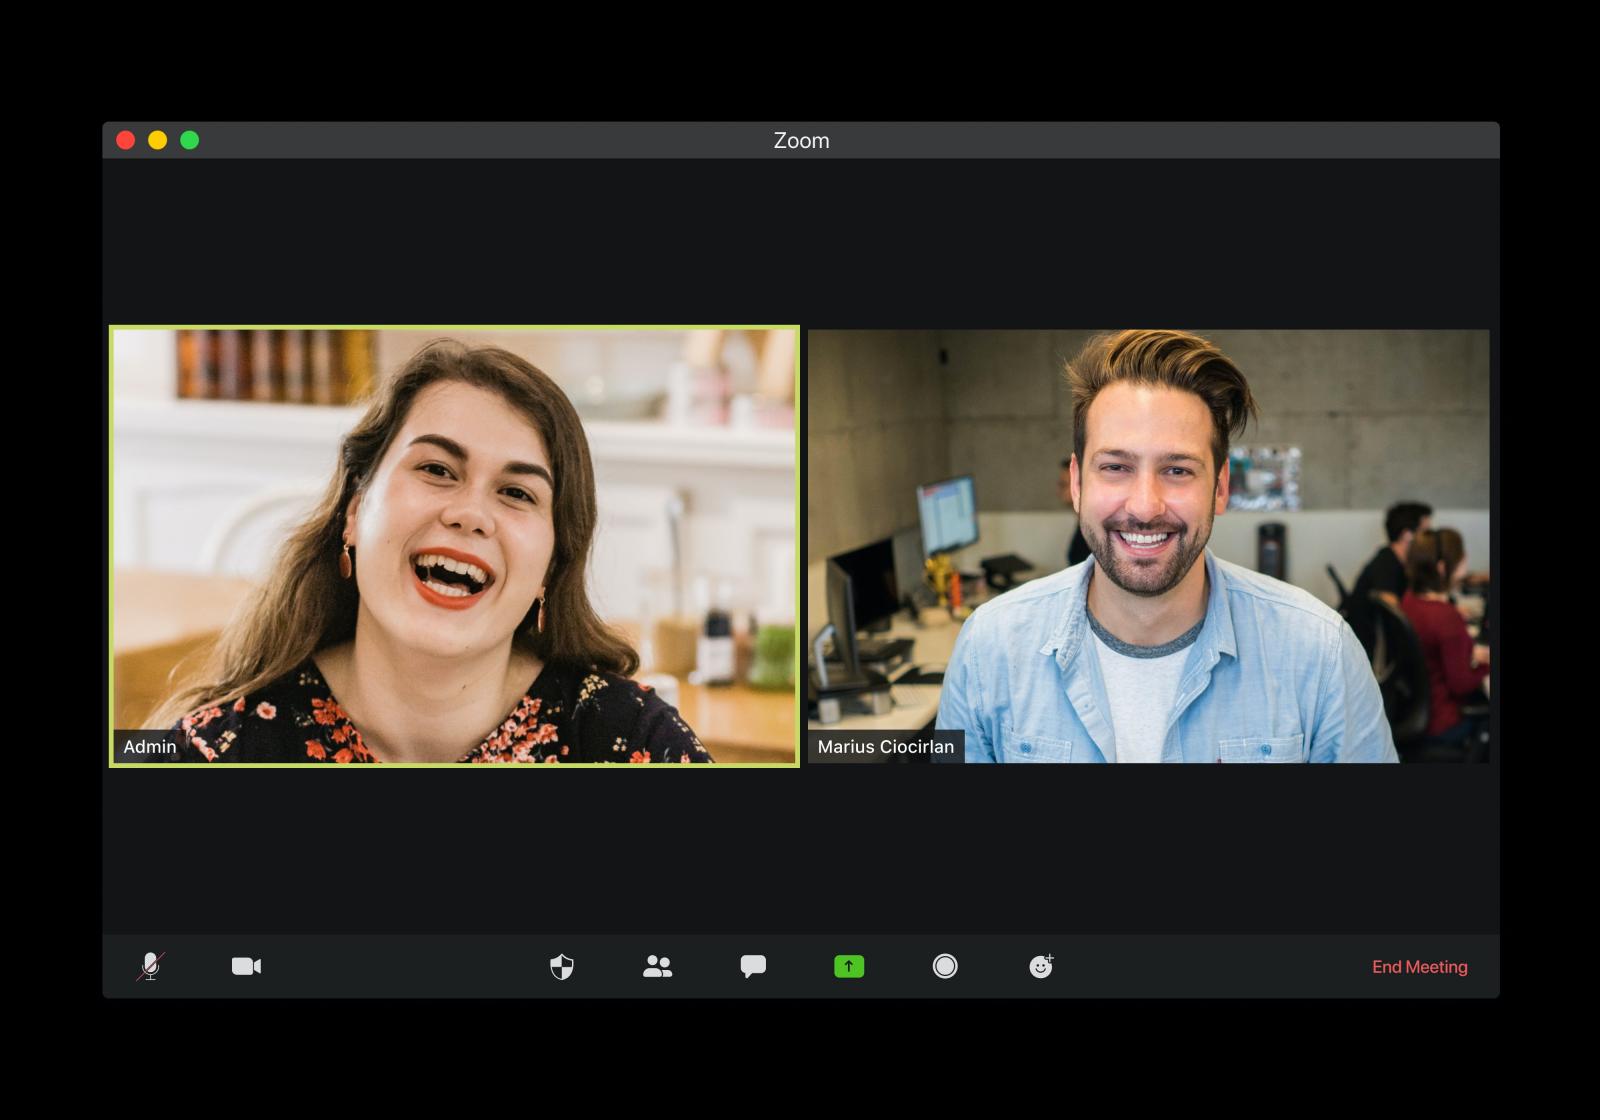 Schermo pc aperto con l'app di Zoom per videoconferenza, a sinistra l'immagine di una donna, a destra l'immagine di un uomo, entrambi sorridono